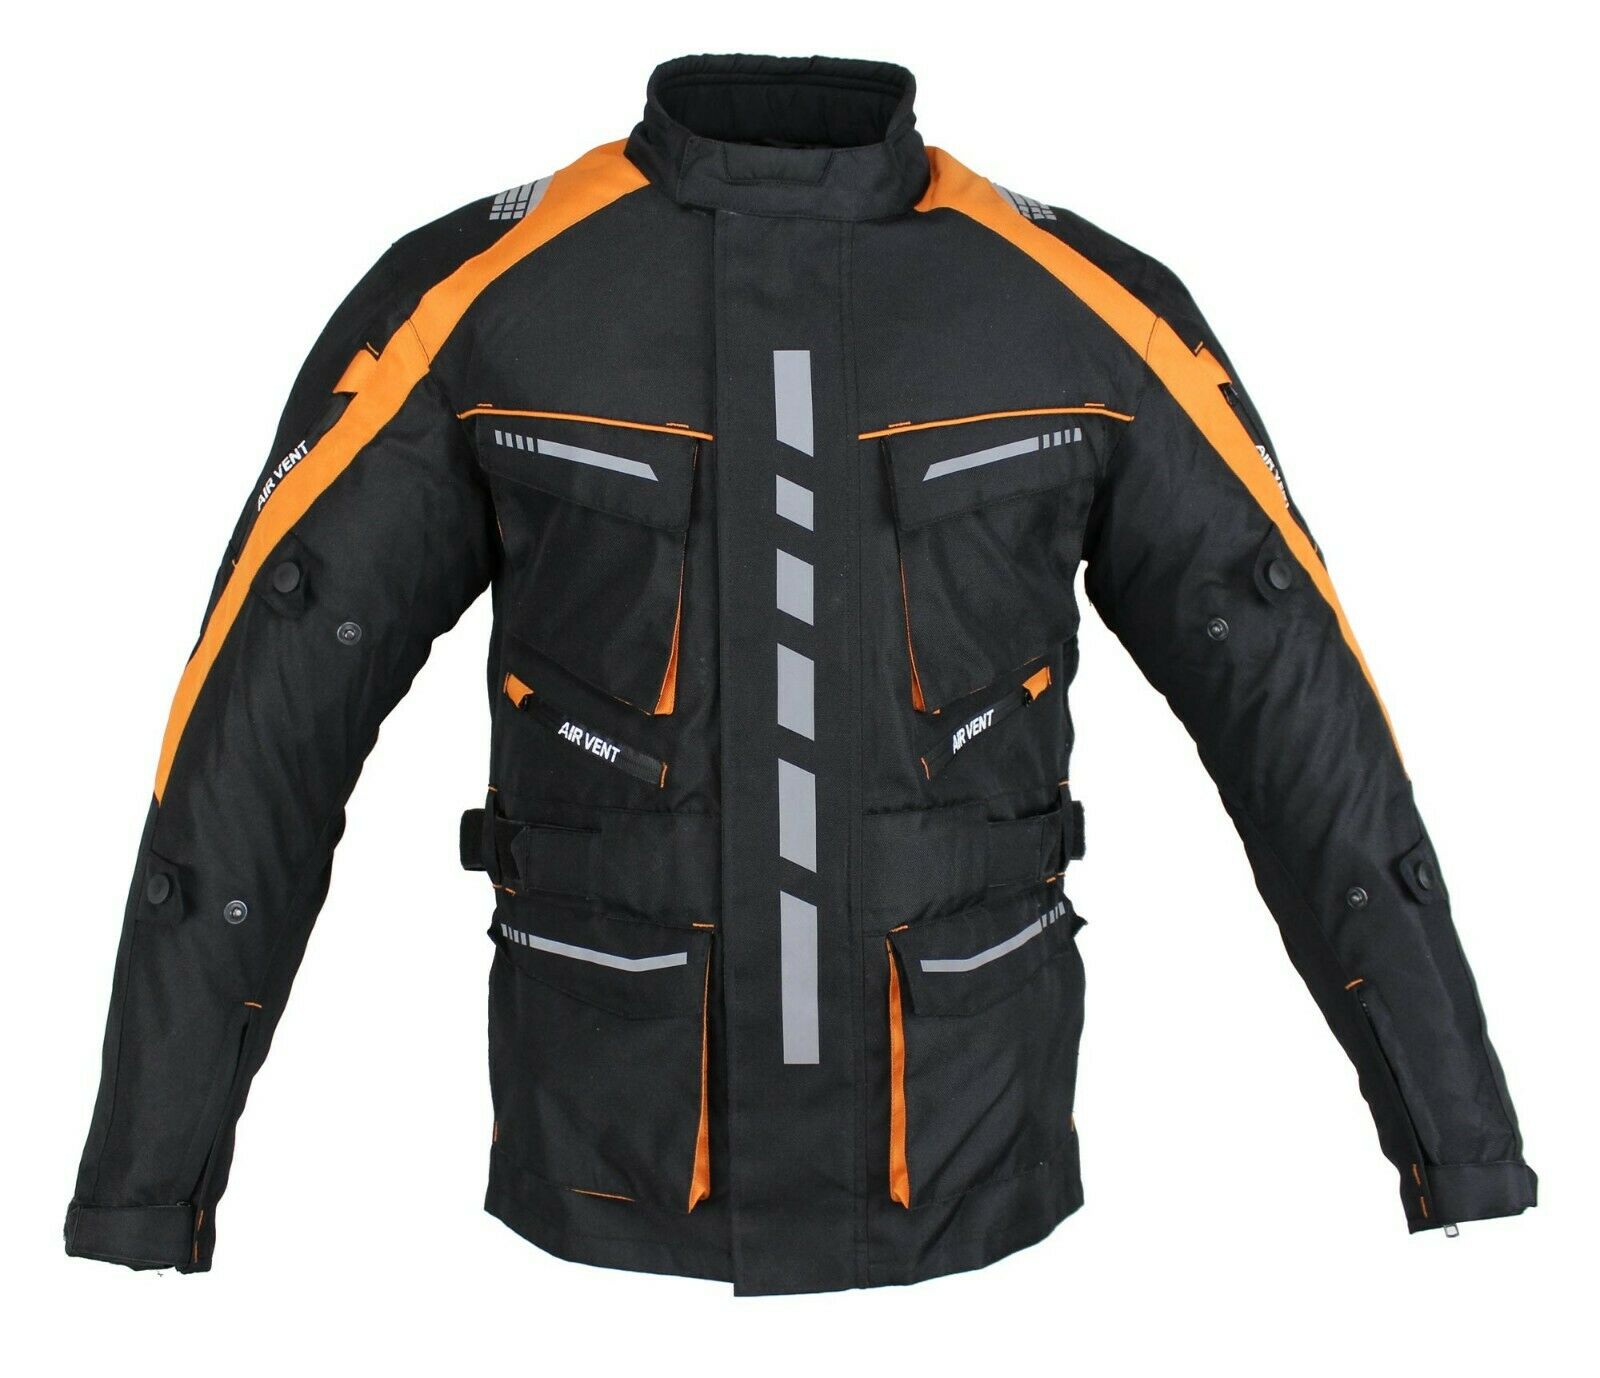 Herren Motorrad Textil Jacke Biker Polyester Sport Touring Jacke mit Protektoren 